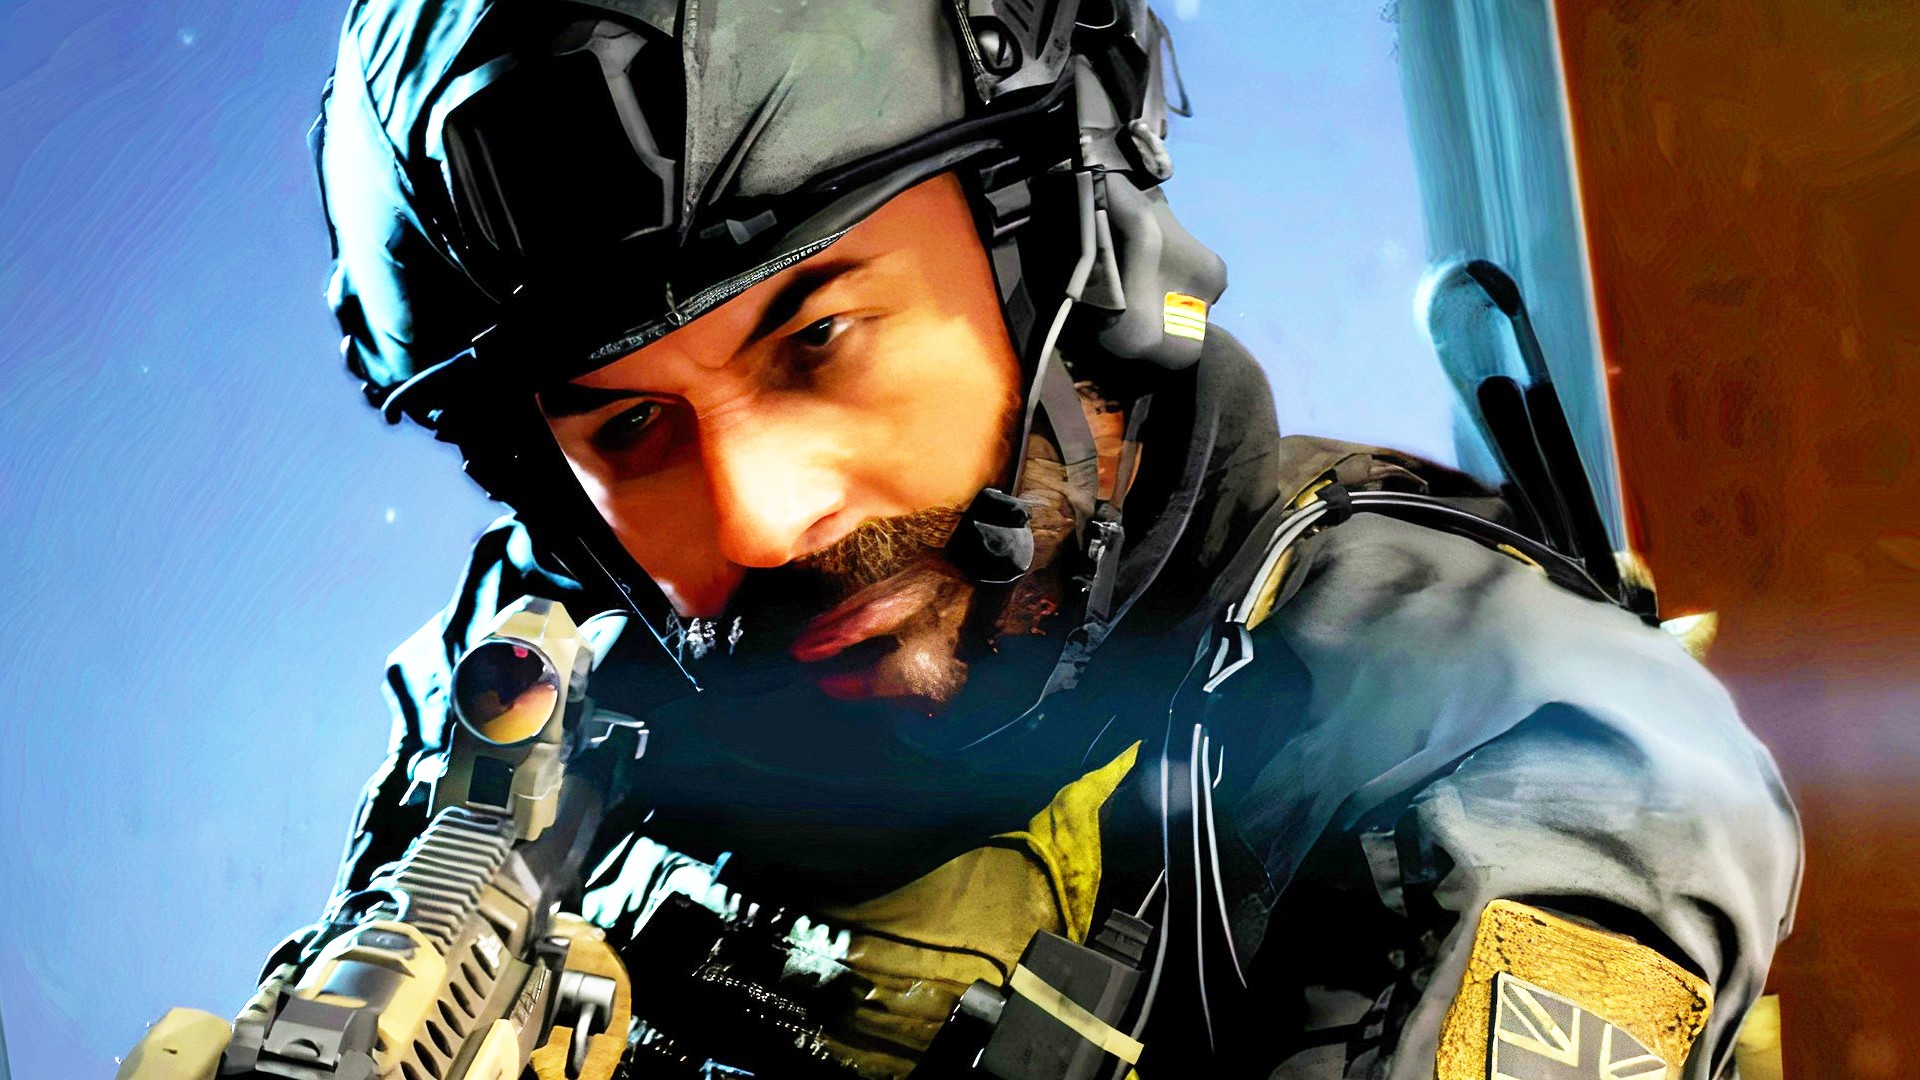 Call of Duty 2023 is Modern Warfare 3!? 